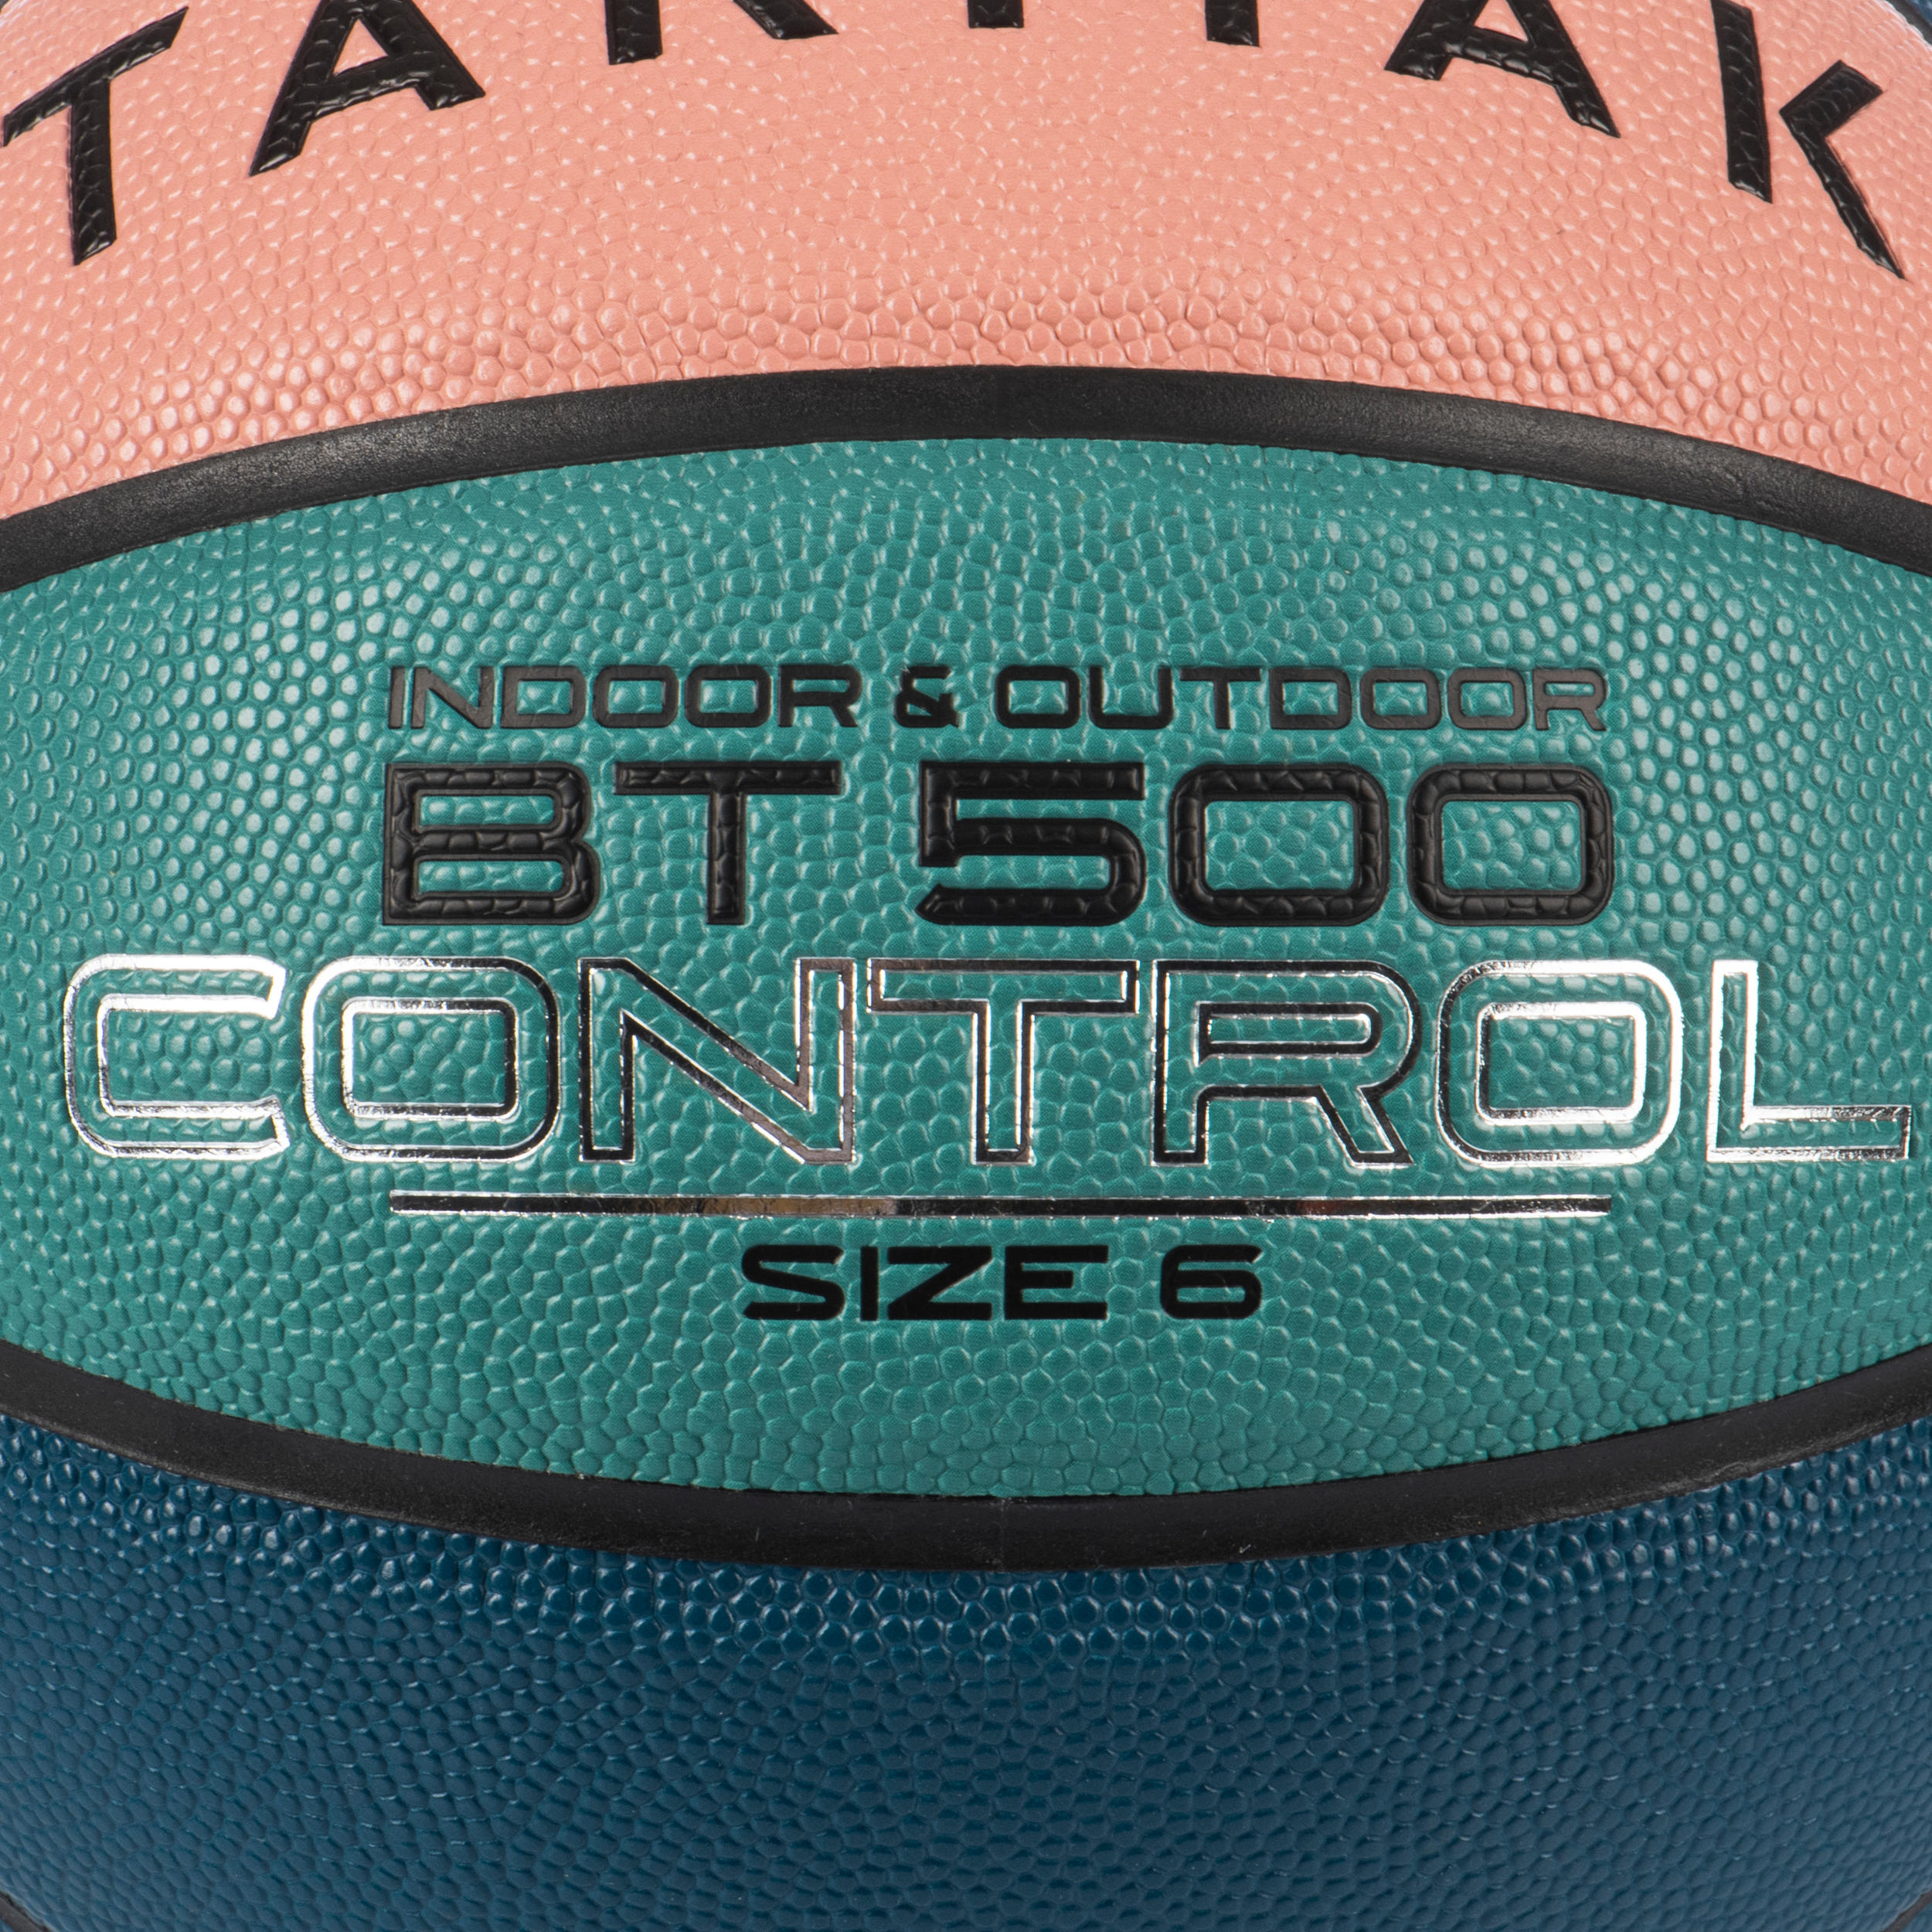 Size 6 Basketball BT500 - Pink/Green/Blue 2/5